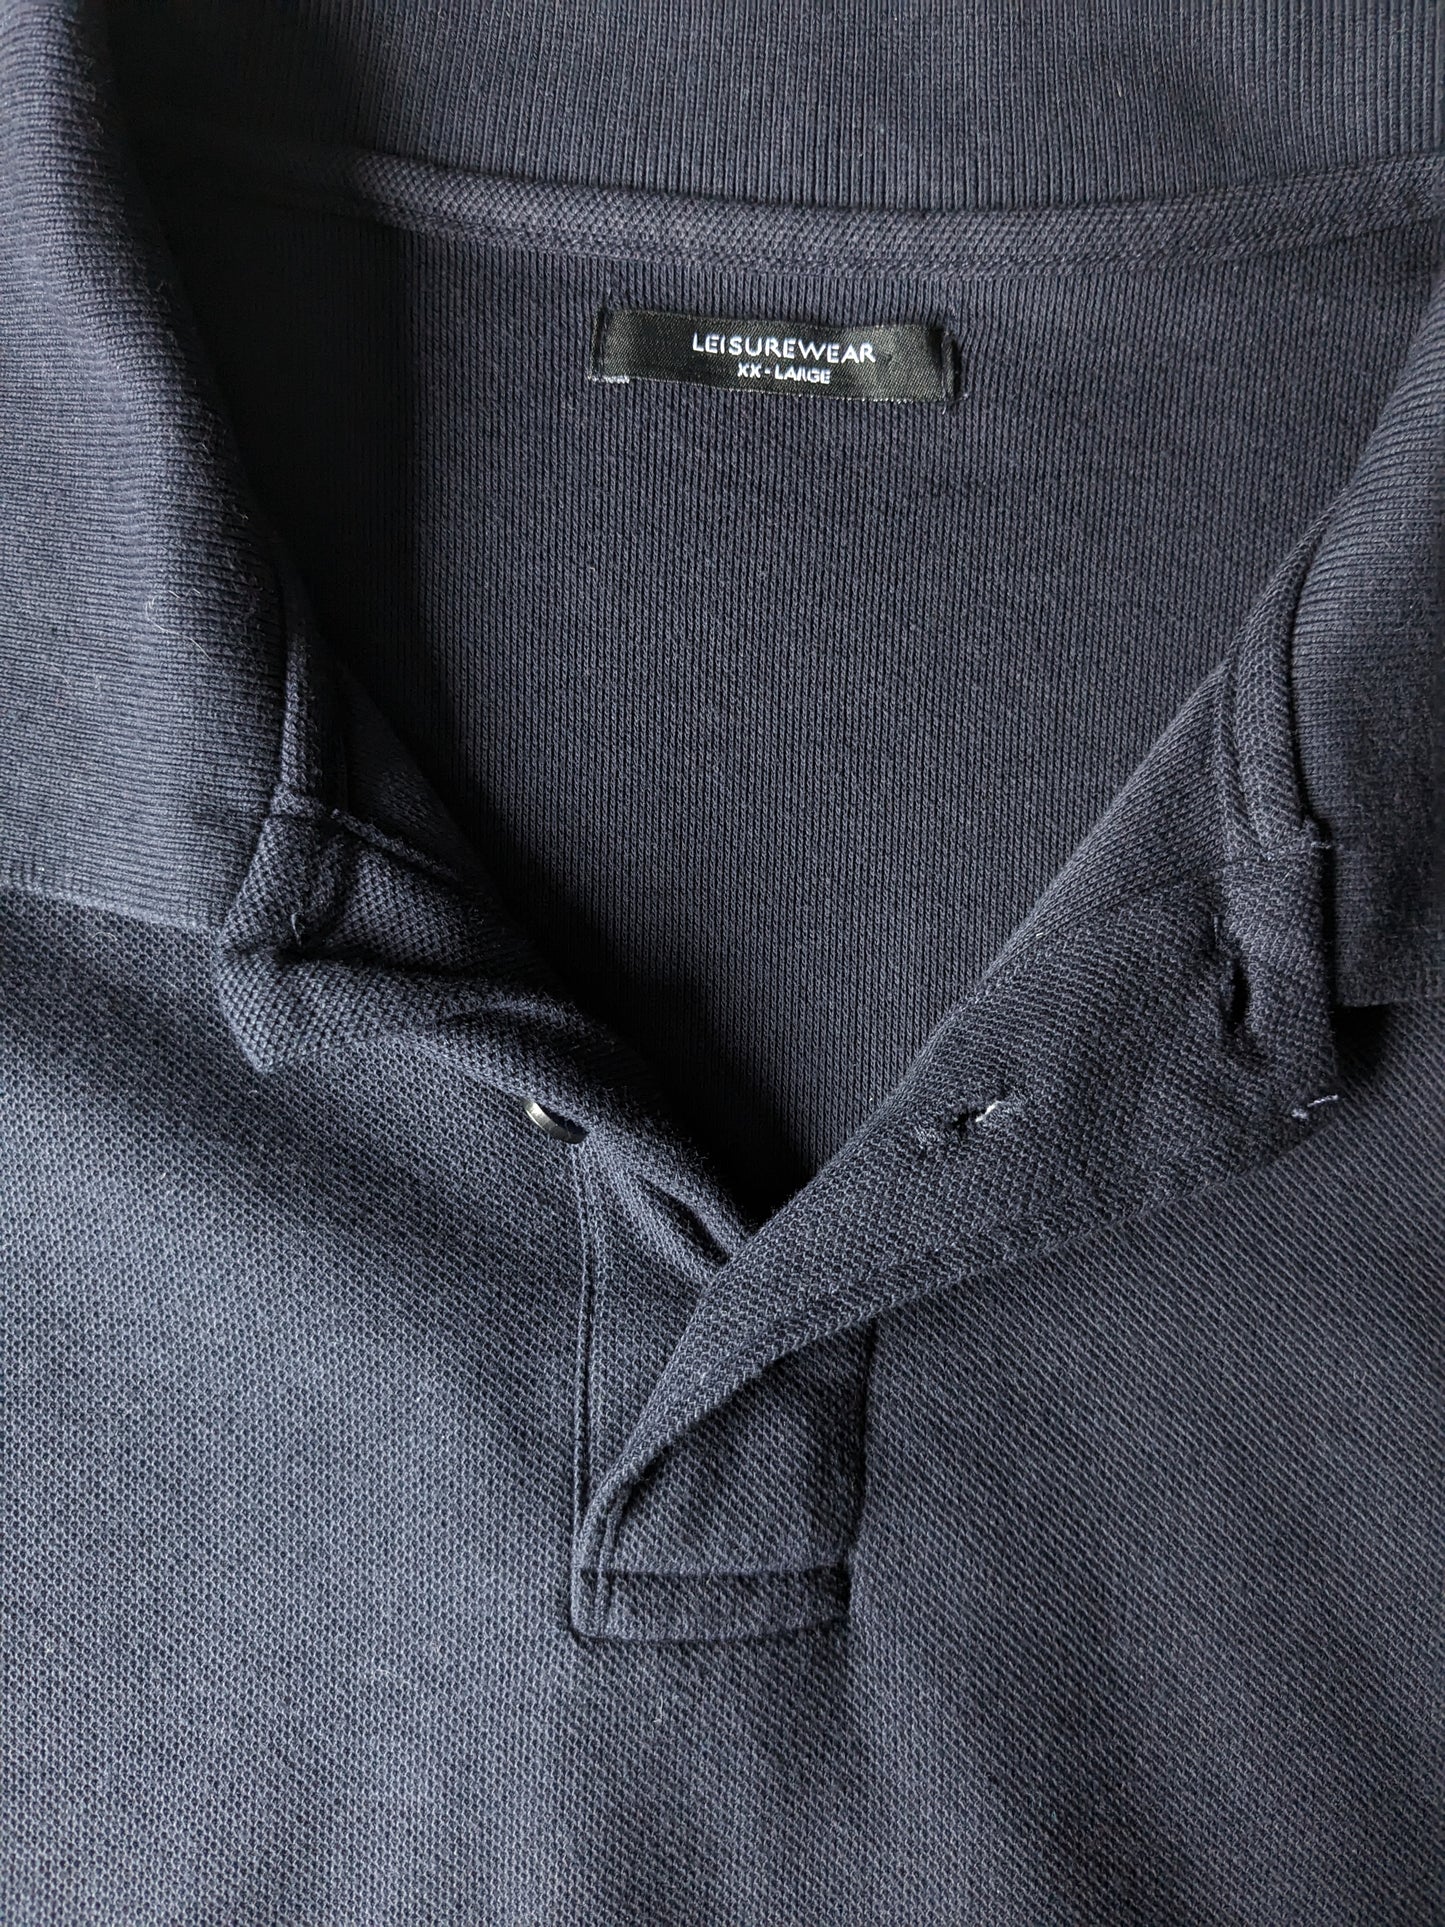 st. Bernard Leisure Wear Polo. Colorato blu scuro. Taglia 2L / XXL.